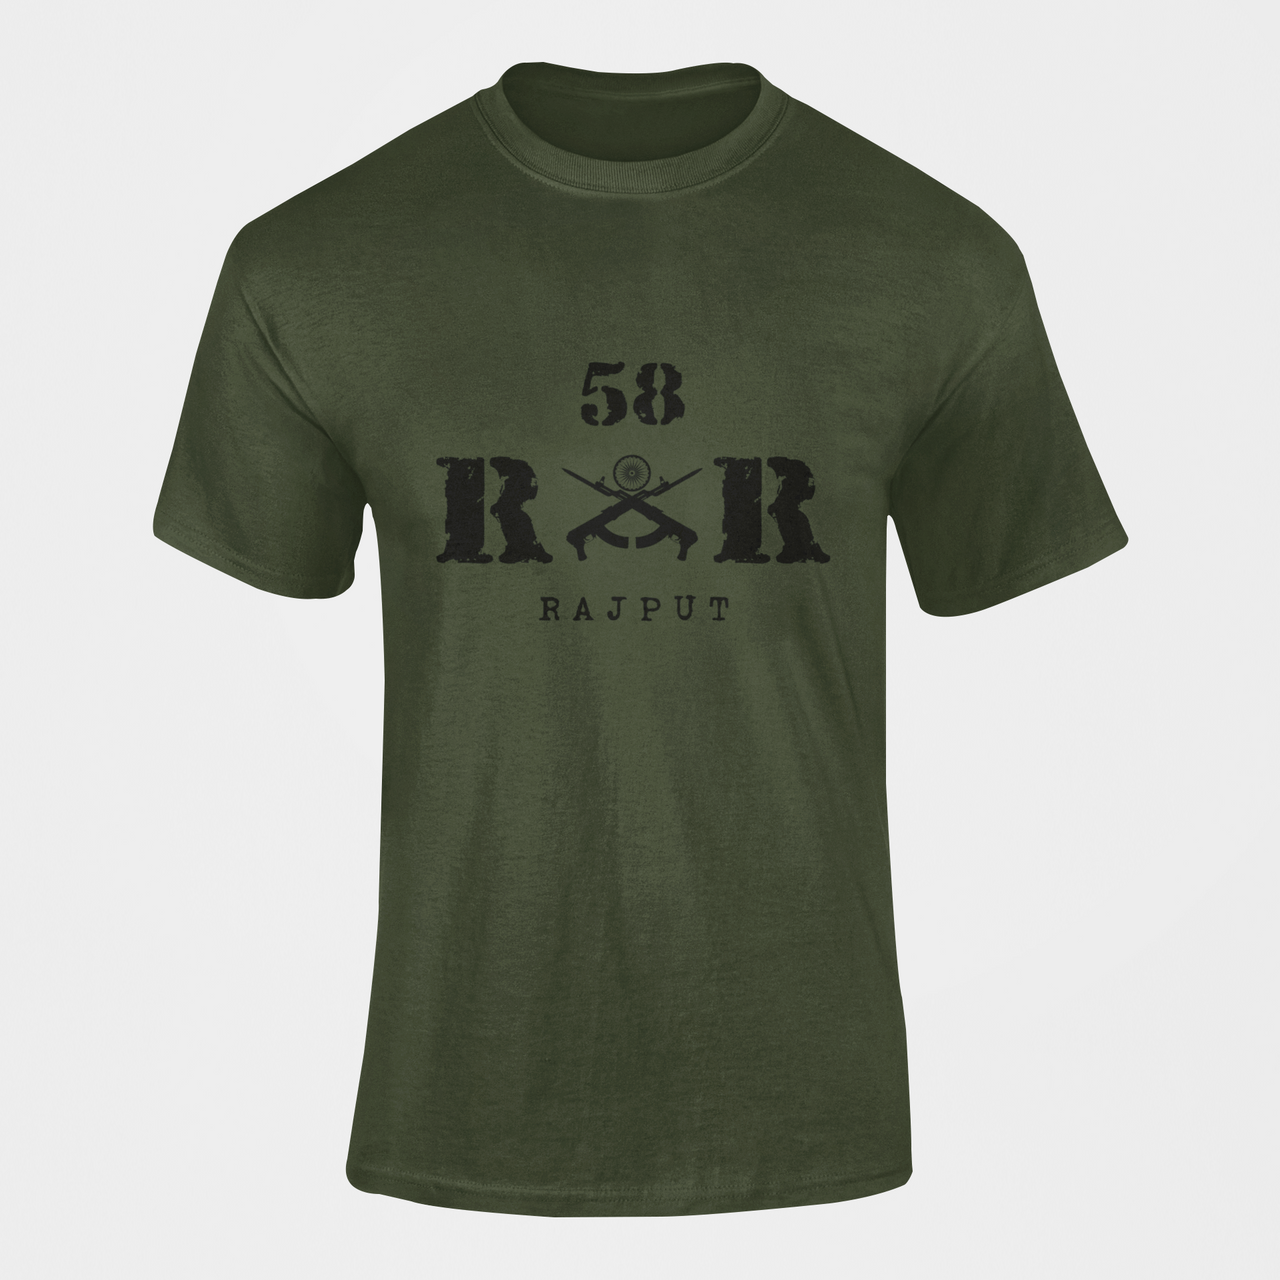 Rashtriya Rifles T-shirt - 58 RR Rajput (Men)